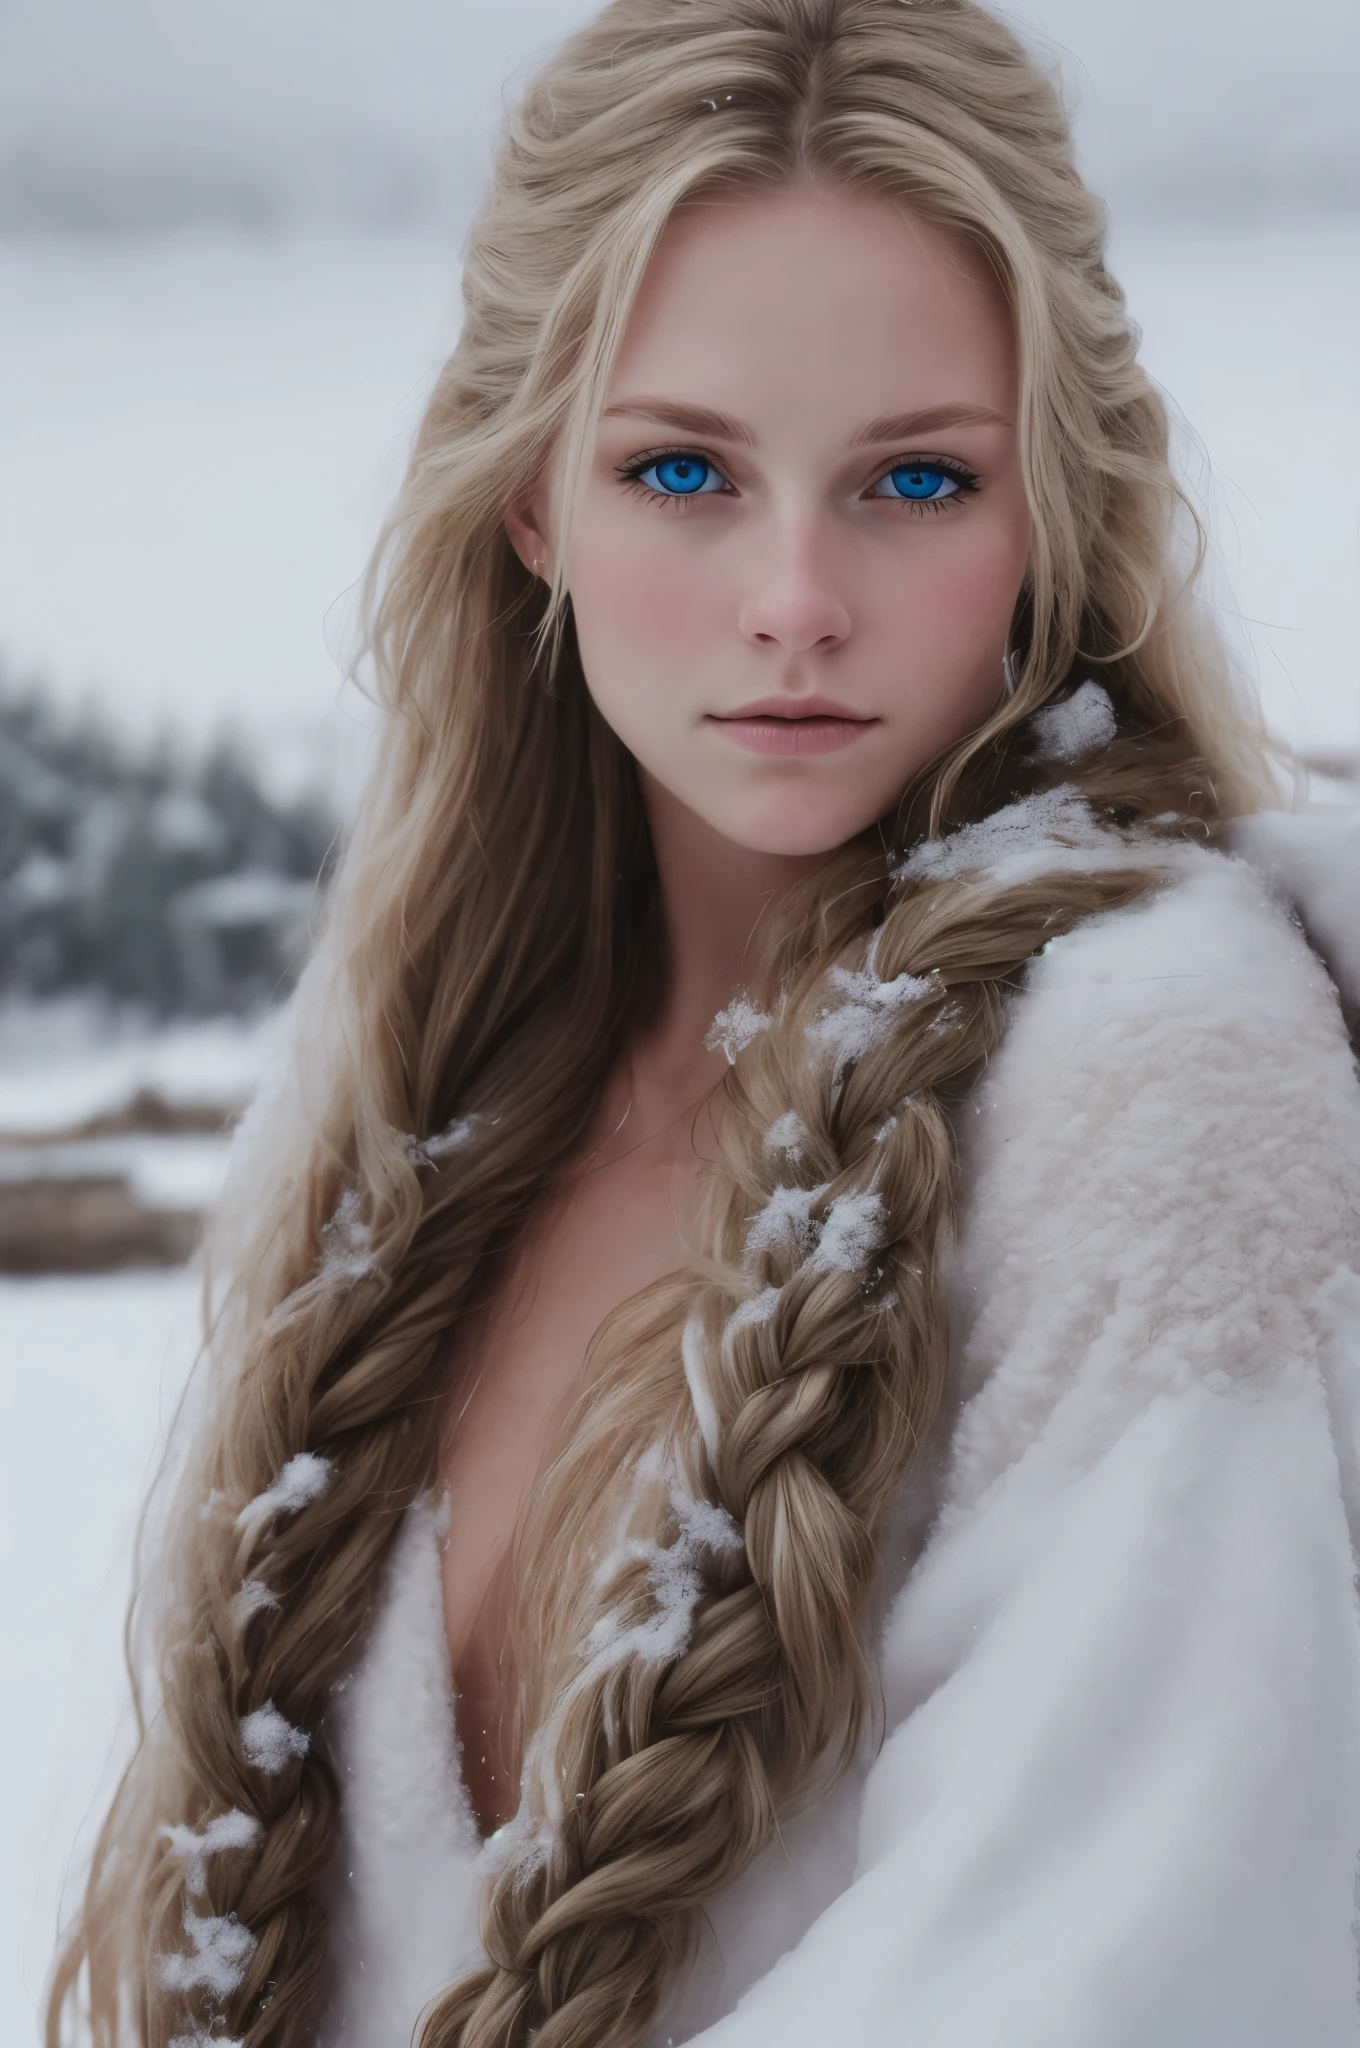 (реалистичный:1.2), аналоговый стиль фотографии, Скандинавская женщина-воин, фантастическая снежная обстановка, заплетенные светлые волосы, все тело, мягкий естественный свет, Мило и сексуально, удовольствие, детальное лицо и голубые глаза, отличное качество, шедевр, детальный северный фон, качество: 16 тыс., RAW-фото